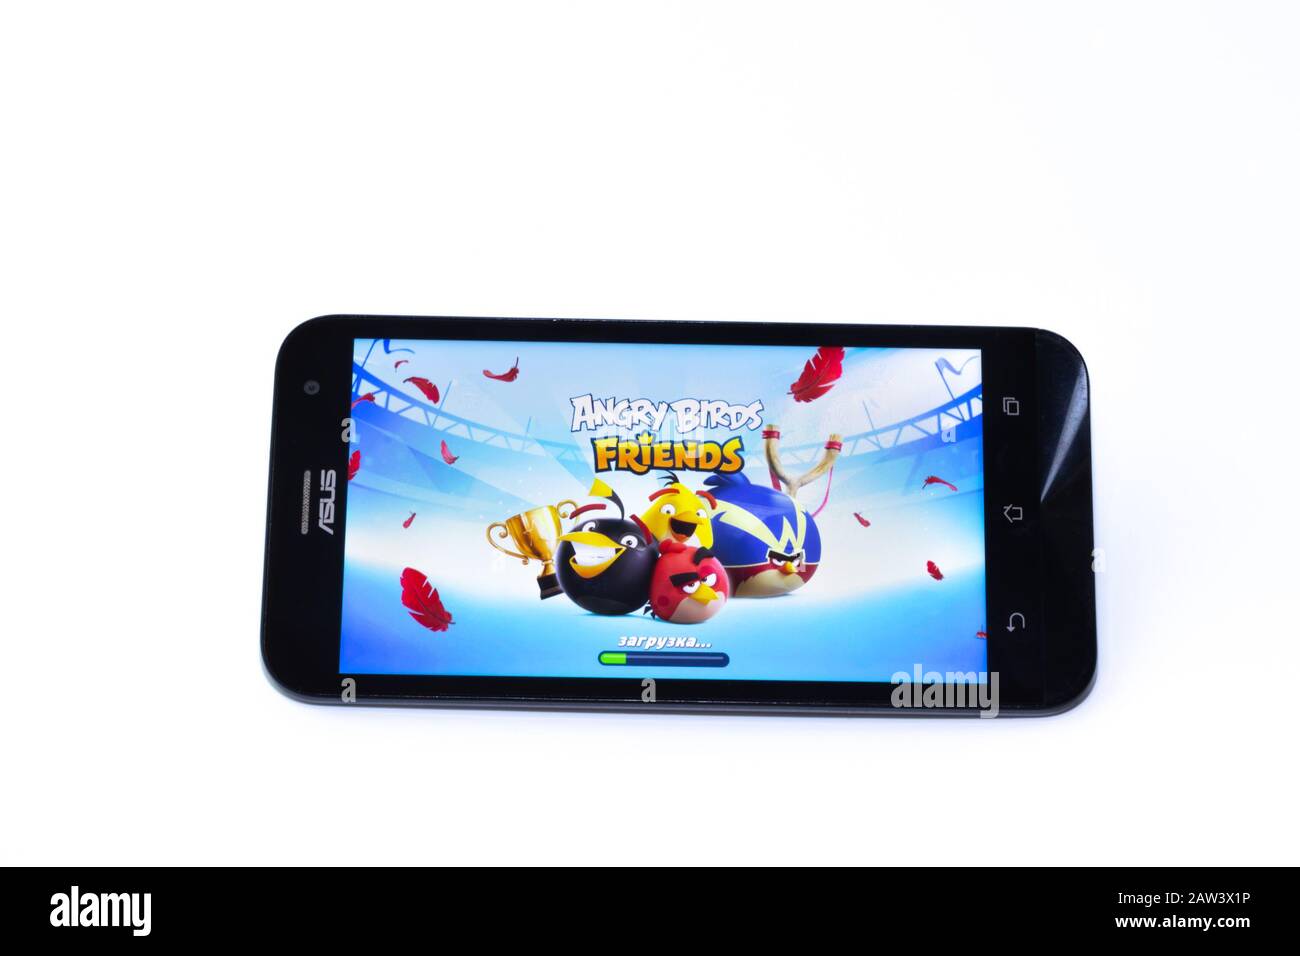 Kouvola, Finlande - 23 Janvier 2020: Game Angry Birds sur l'écran du smartphone Asus Banque D'Images